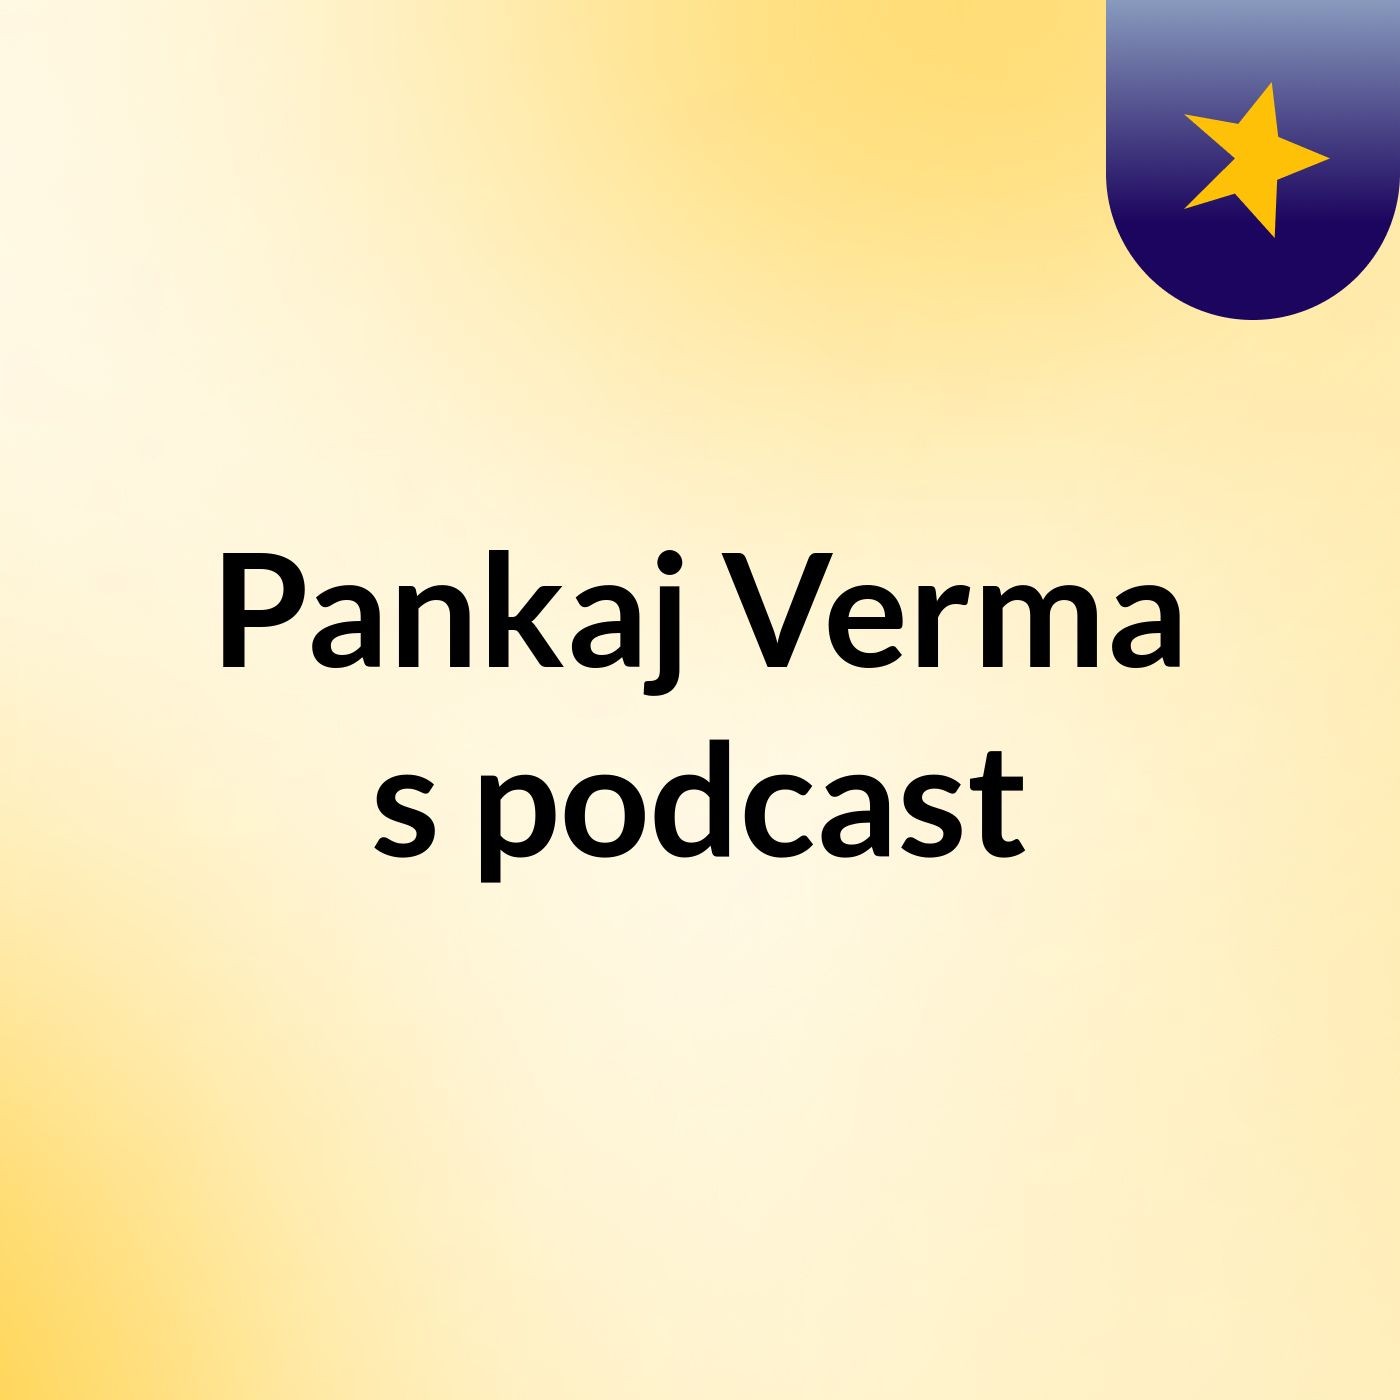 Episode 3 - Pankaj Verma's podcast